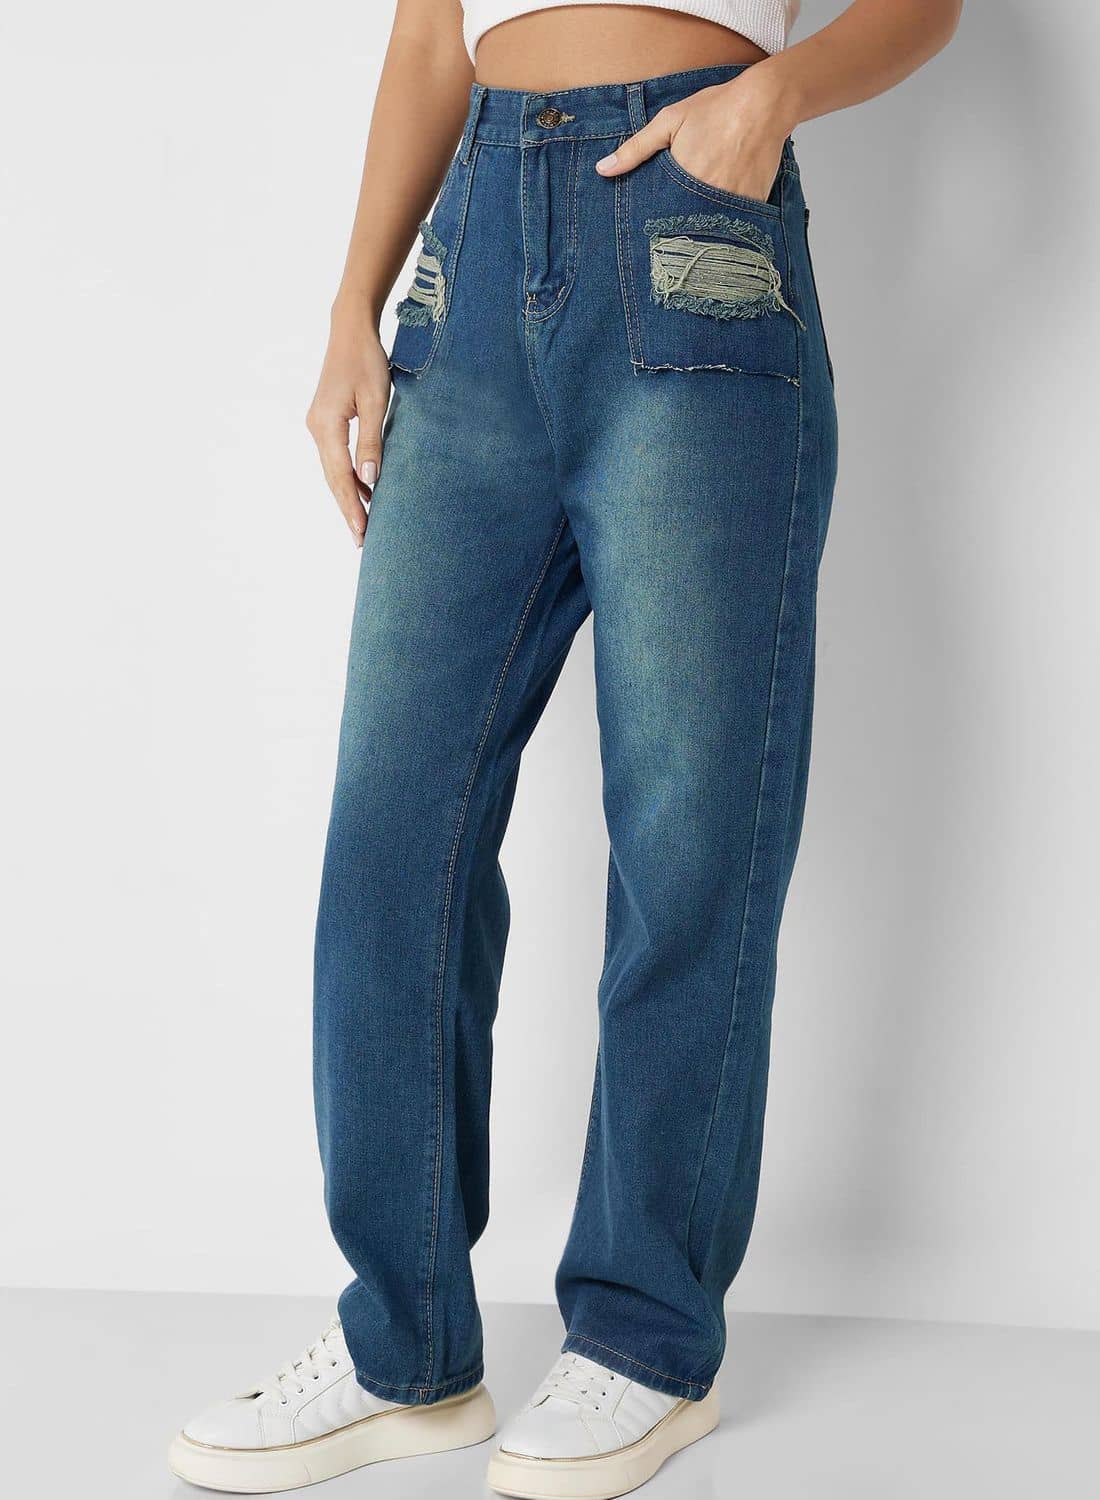 جينز بخصر مرتفع وجيوب
ملابس نسائية جينز